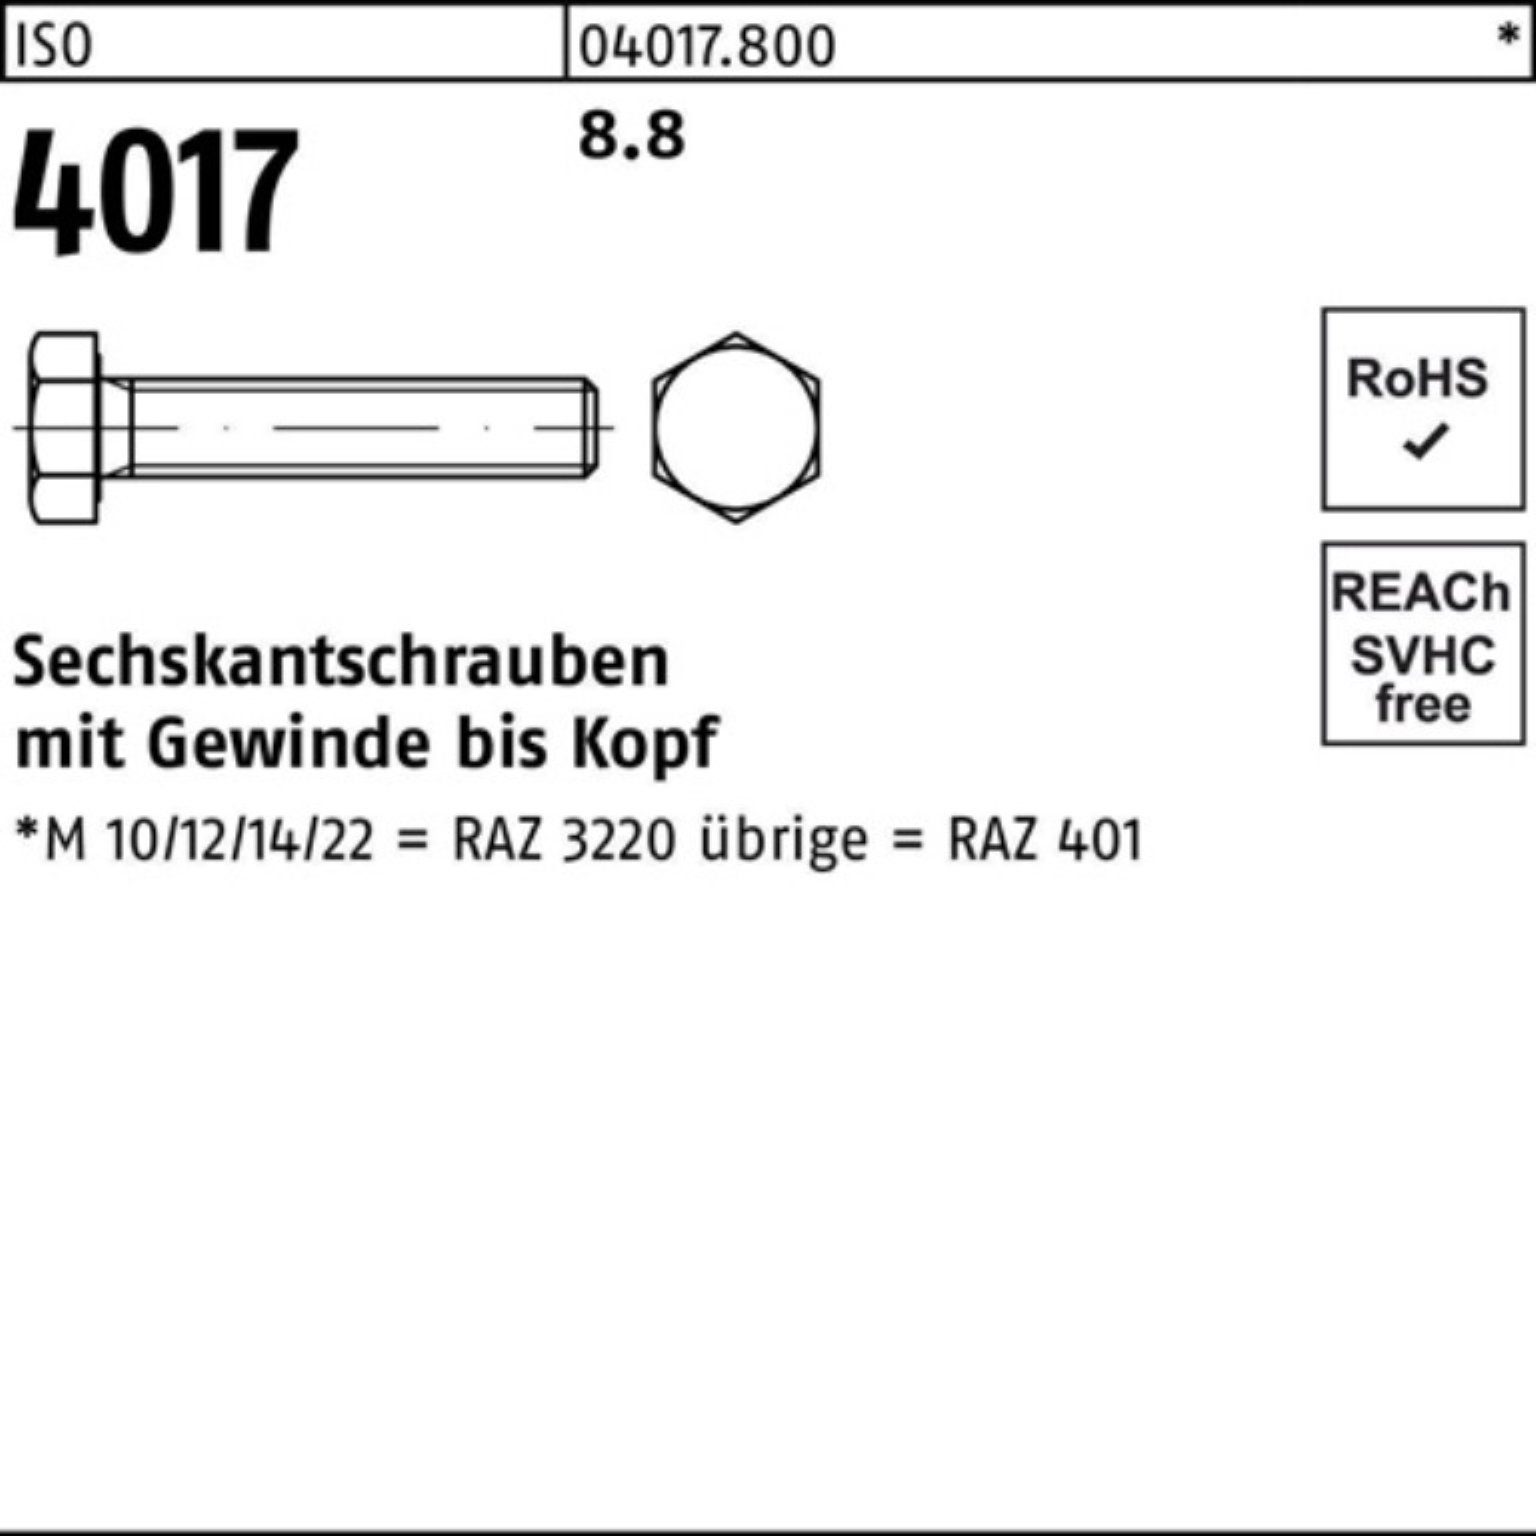 VG Sechskantschraube M30x Pack 1 Stück 100er 4017 ISO Bufab ISO Sechskantschraube 401 8.8 200